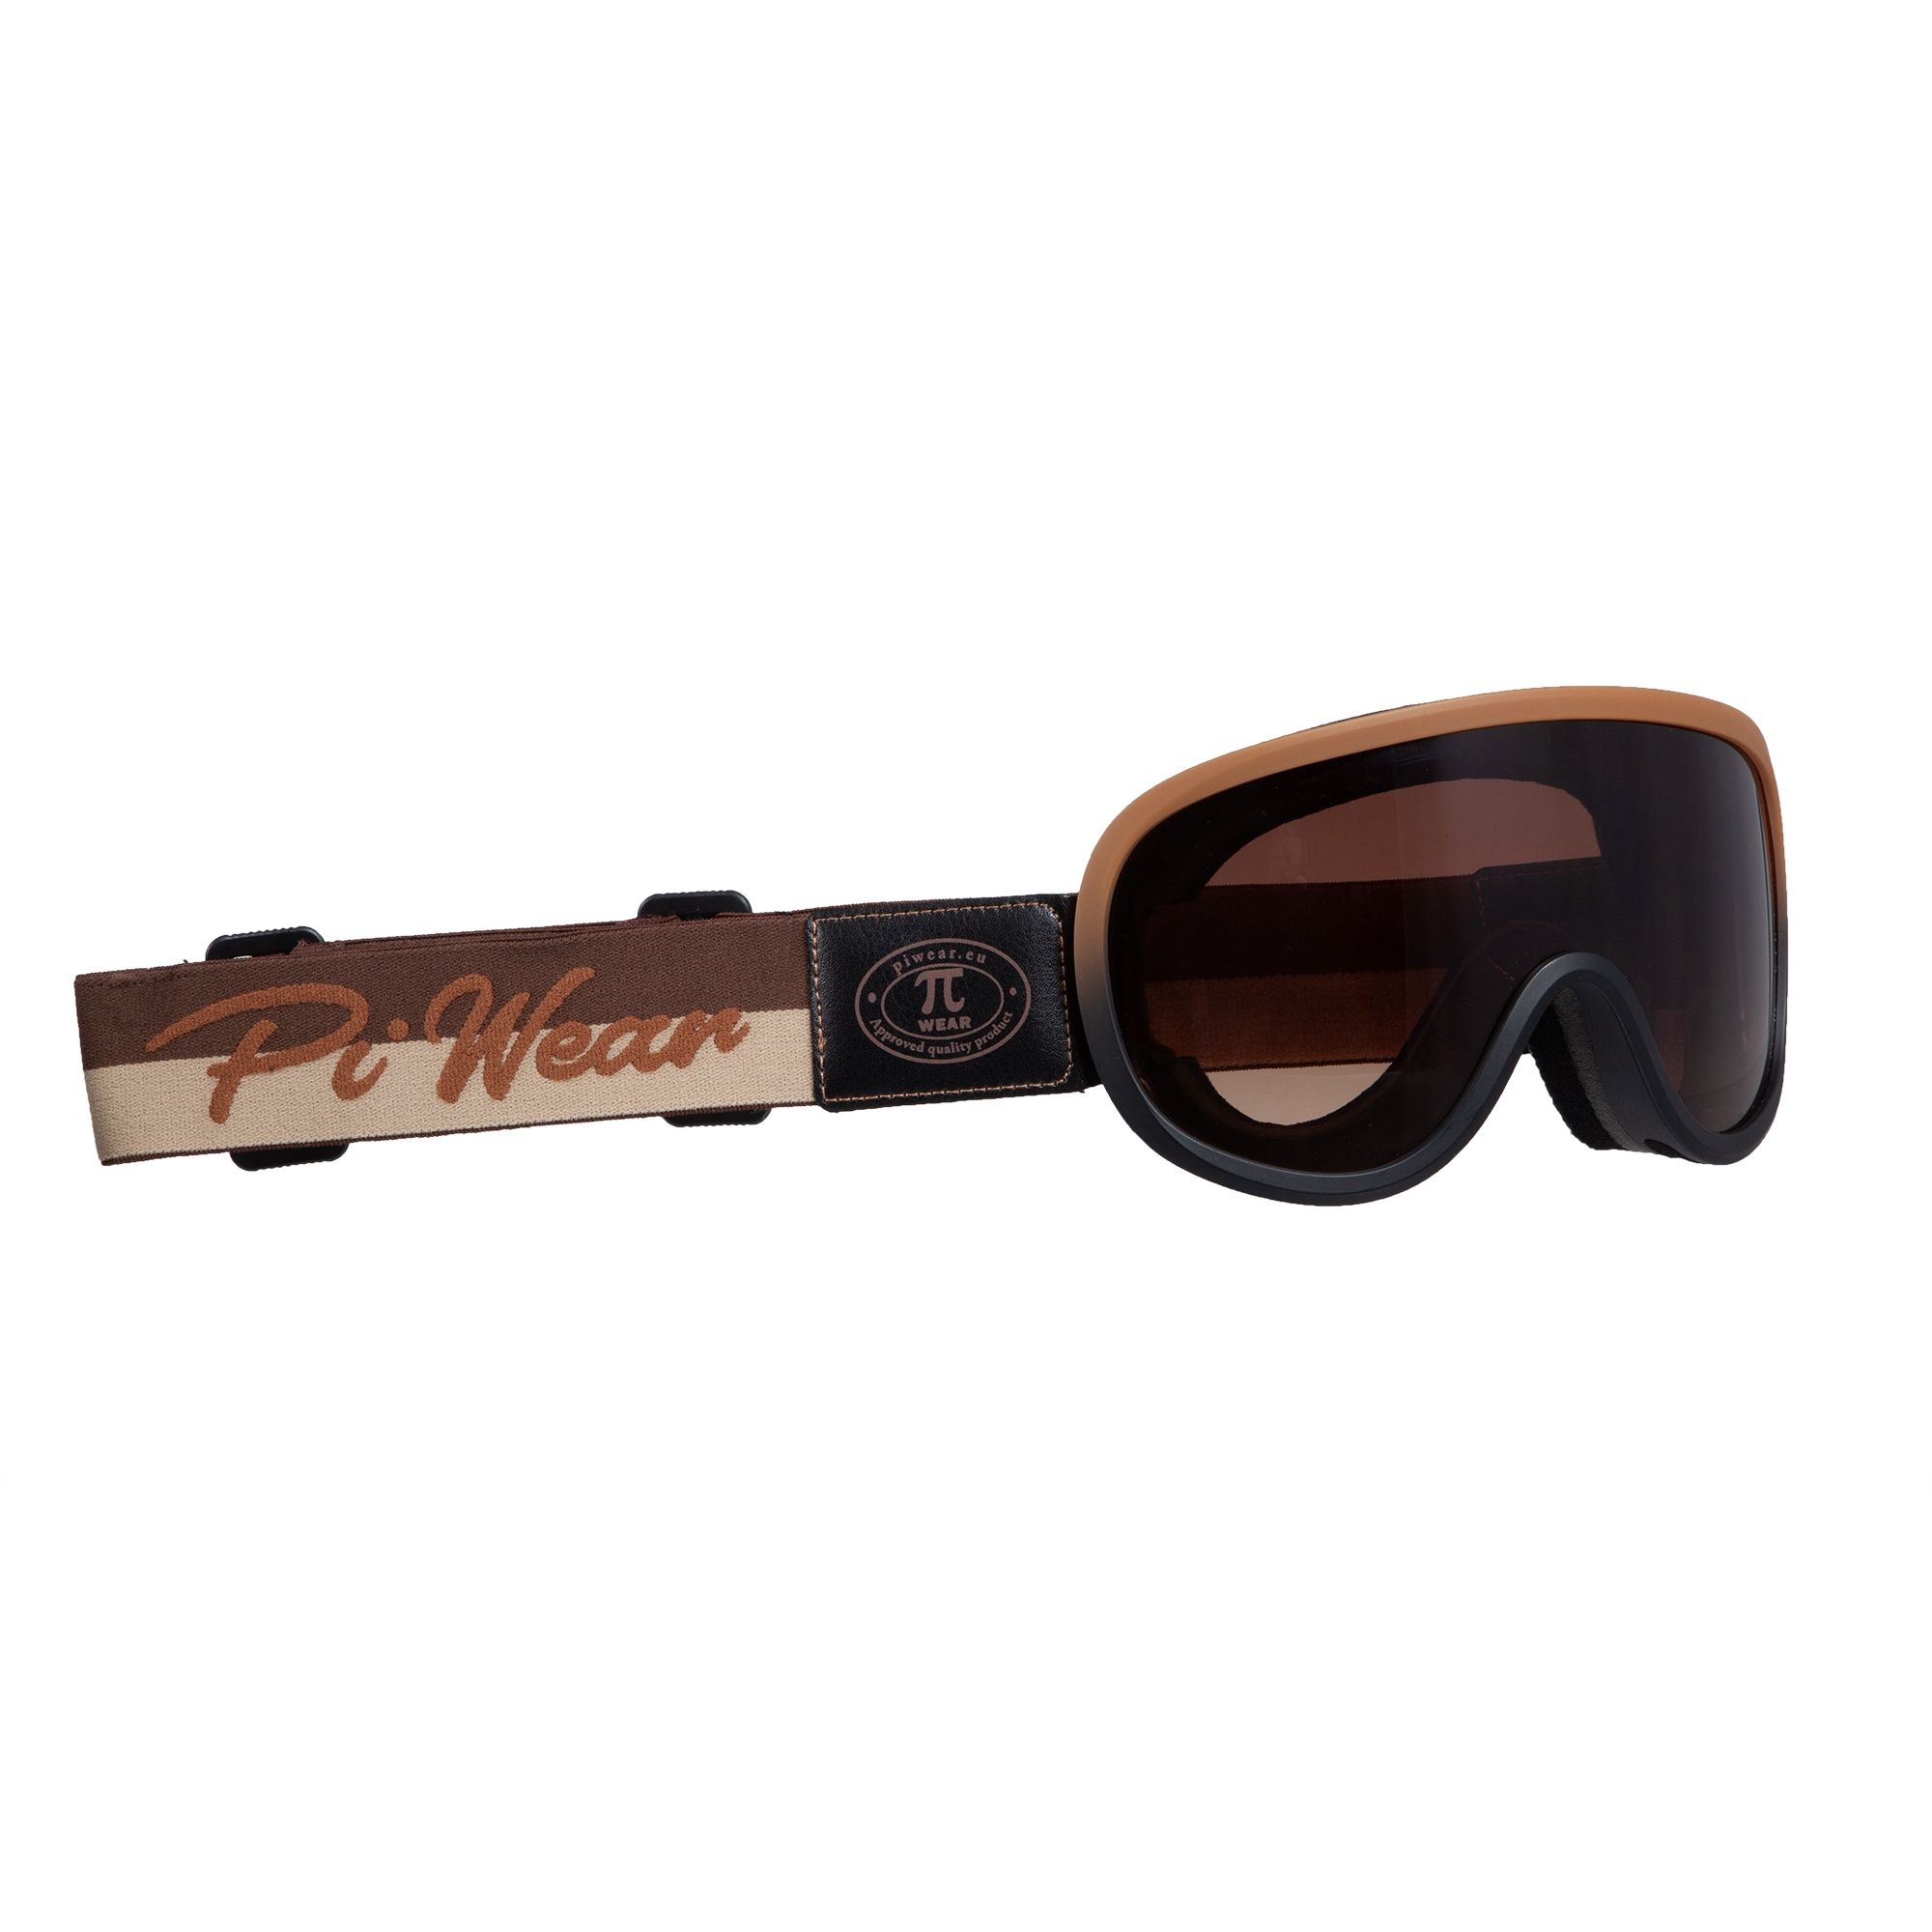 PiWear® Arizona Retro Motorradbrille Überbrille Schutzbrille für Brillenträger gepolstert beschlagfrei Rahmen braun Band braun Logo schwarz Glas braun getönt verlaufend